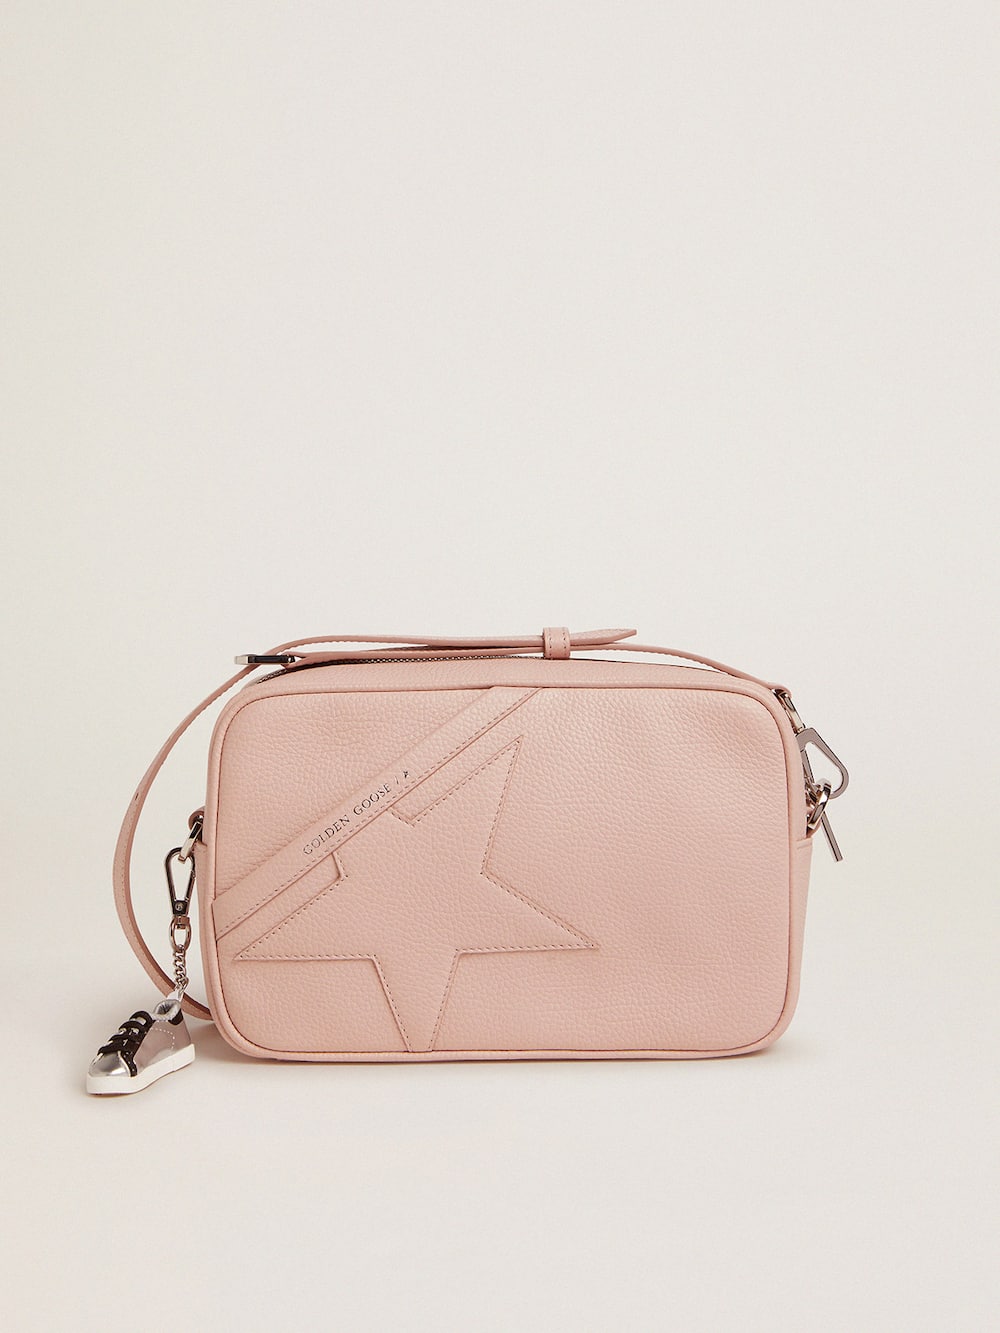 Golden Goose - Bolso Star Bag de piel martillada color rosa cuarzo y estrella tono sobre tono in 